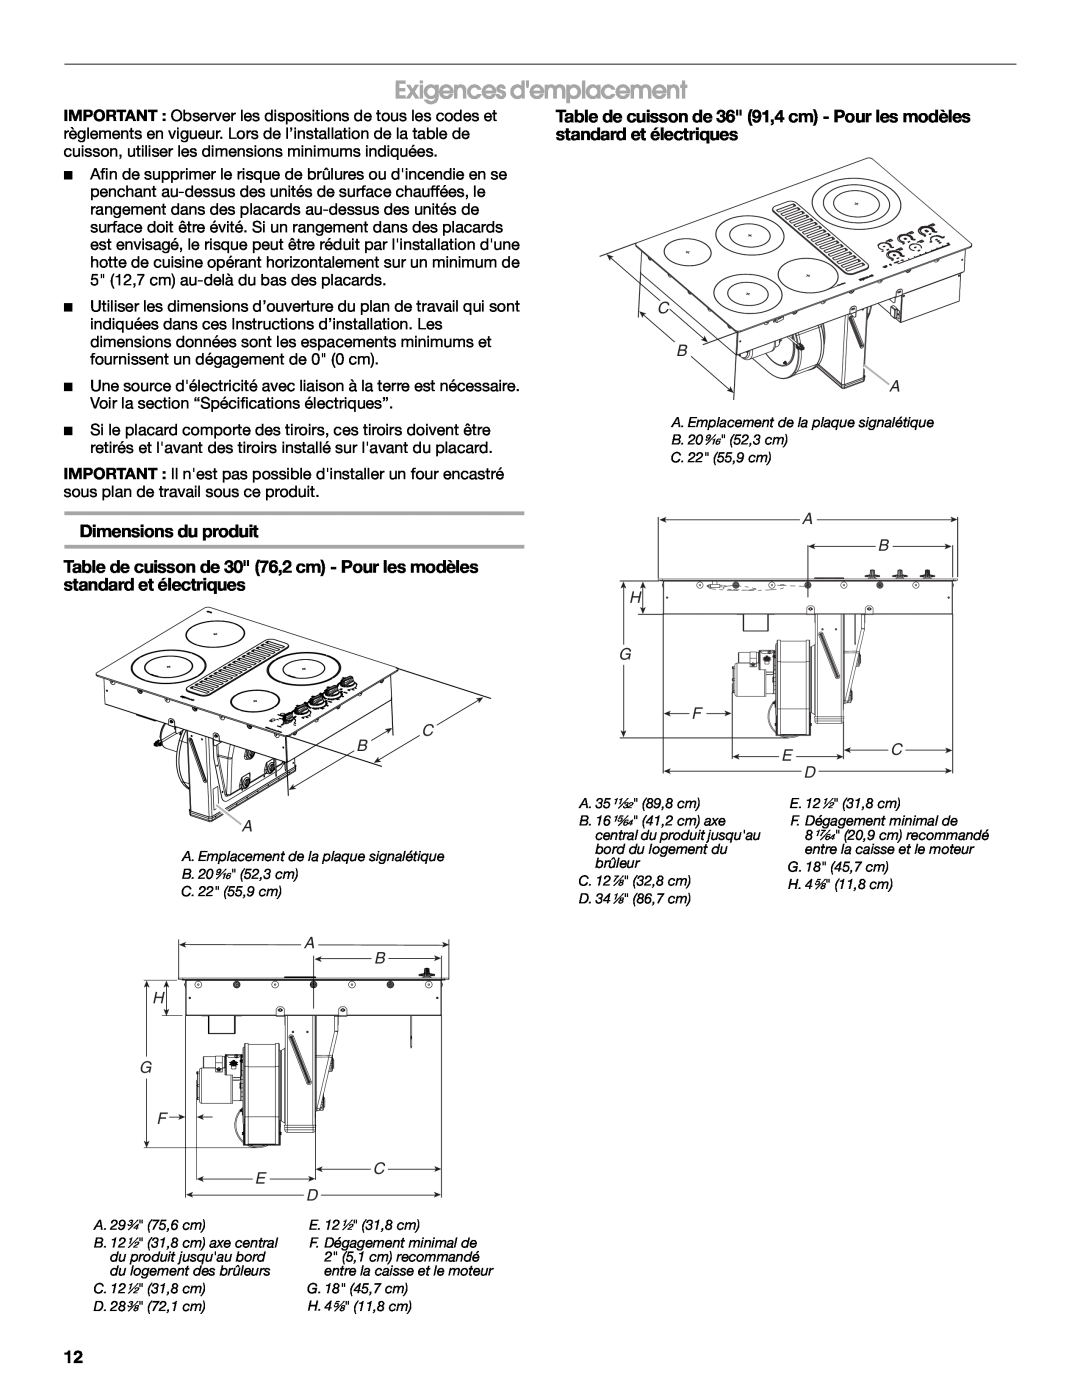 Jenn-Air W10436037B installation instructions Exigences demplacement, Dimensions du produit 